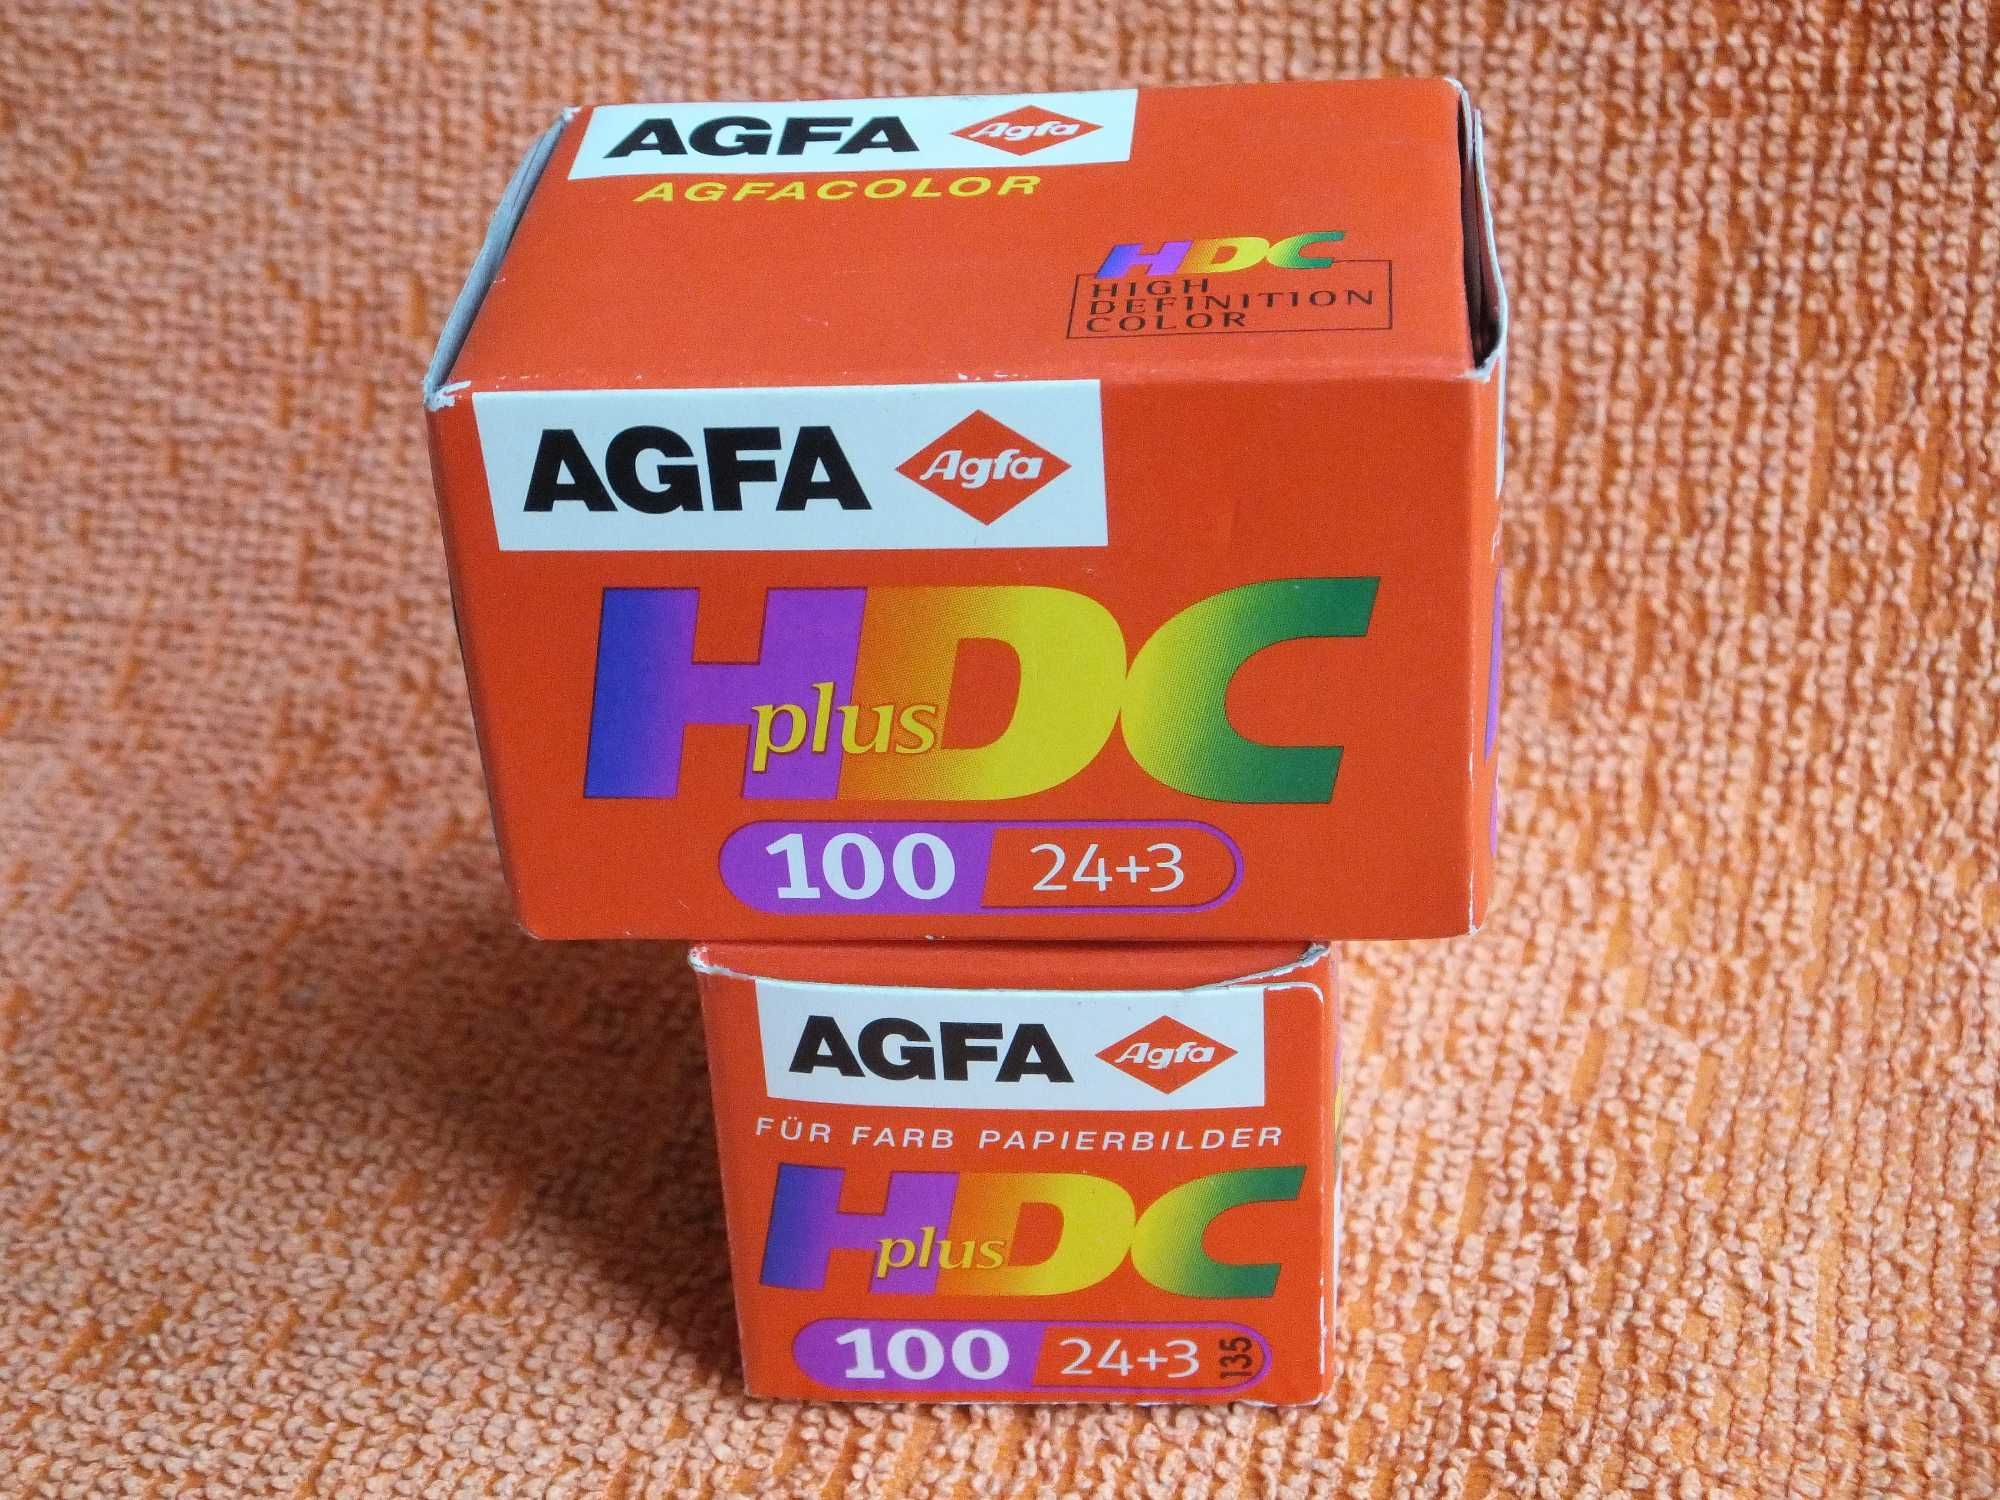 Negatyw kolor AGFA HDC plus. wysoka jakość, 100 ASA 
43 zł